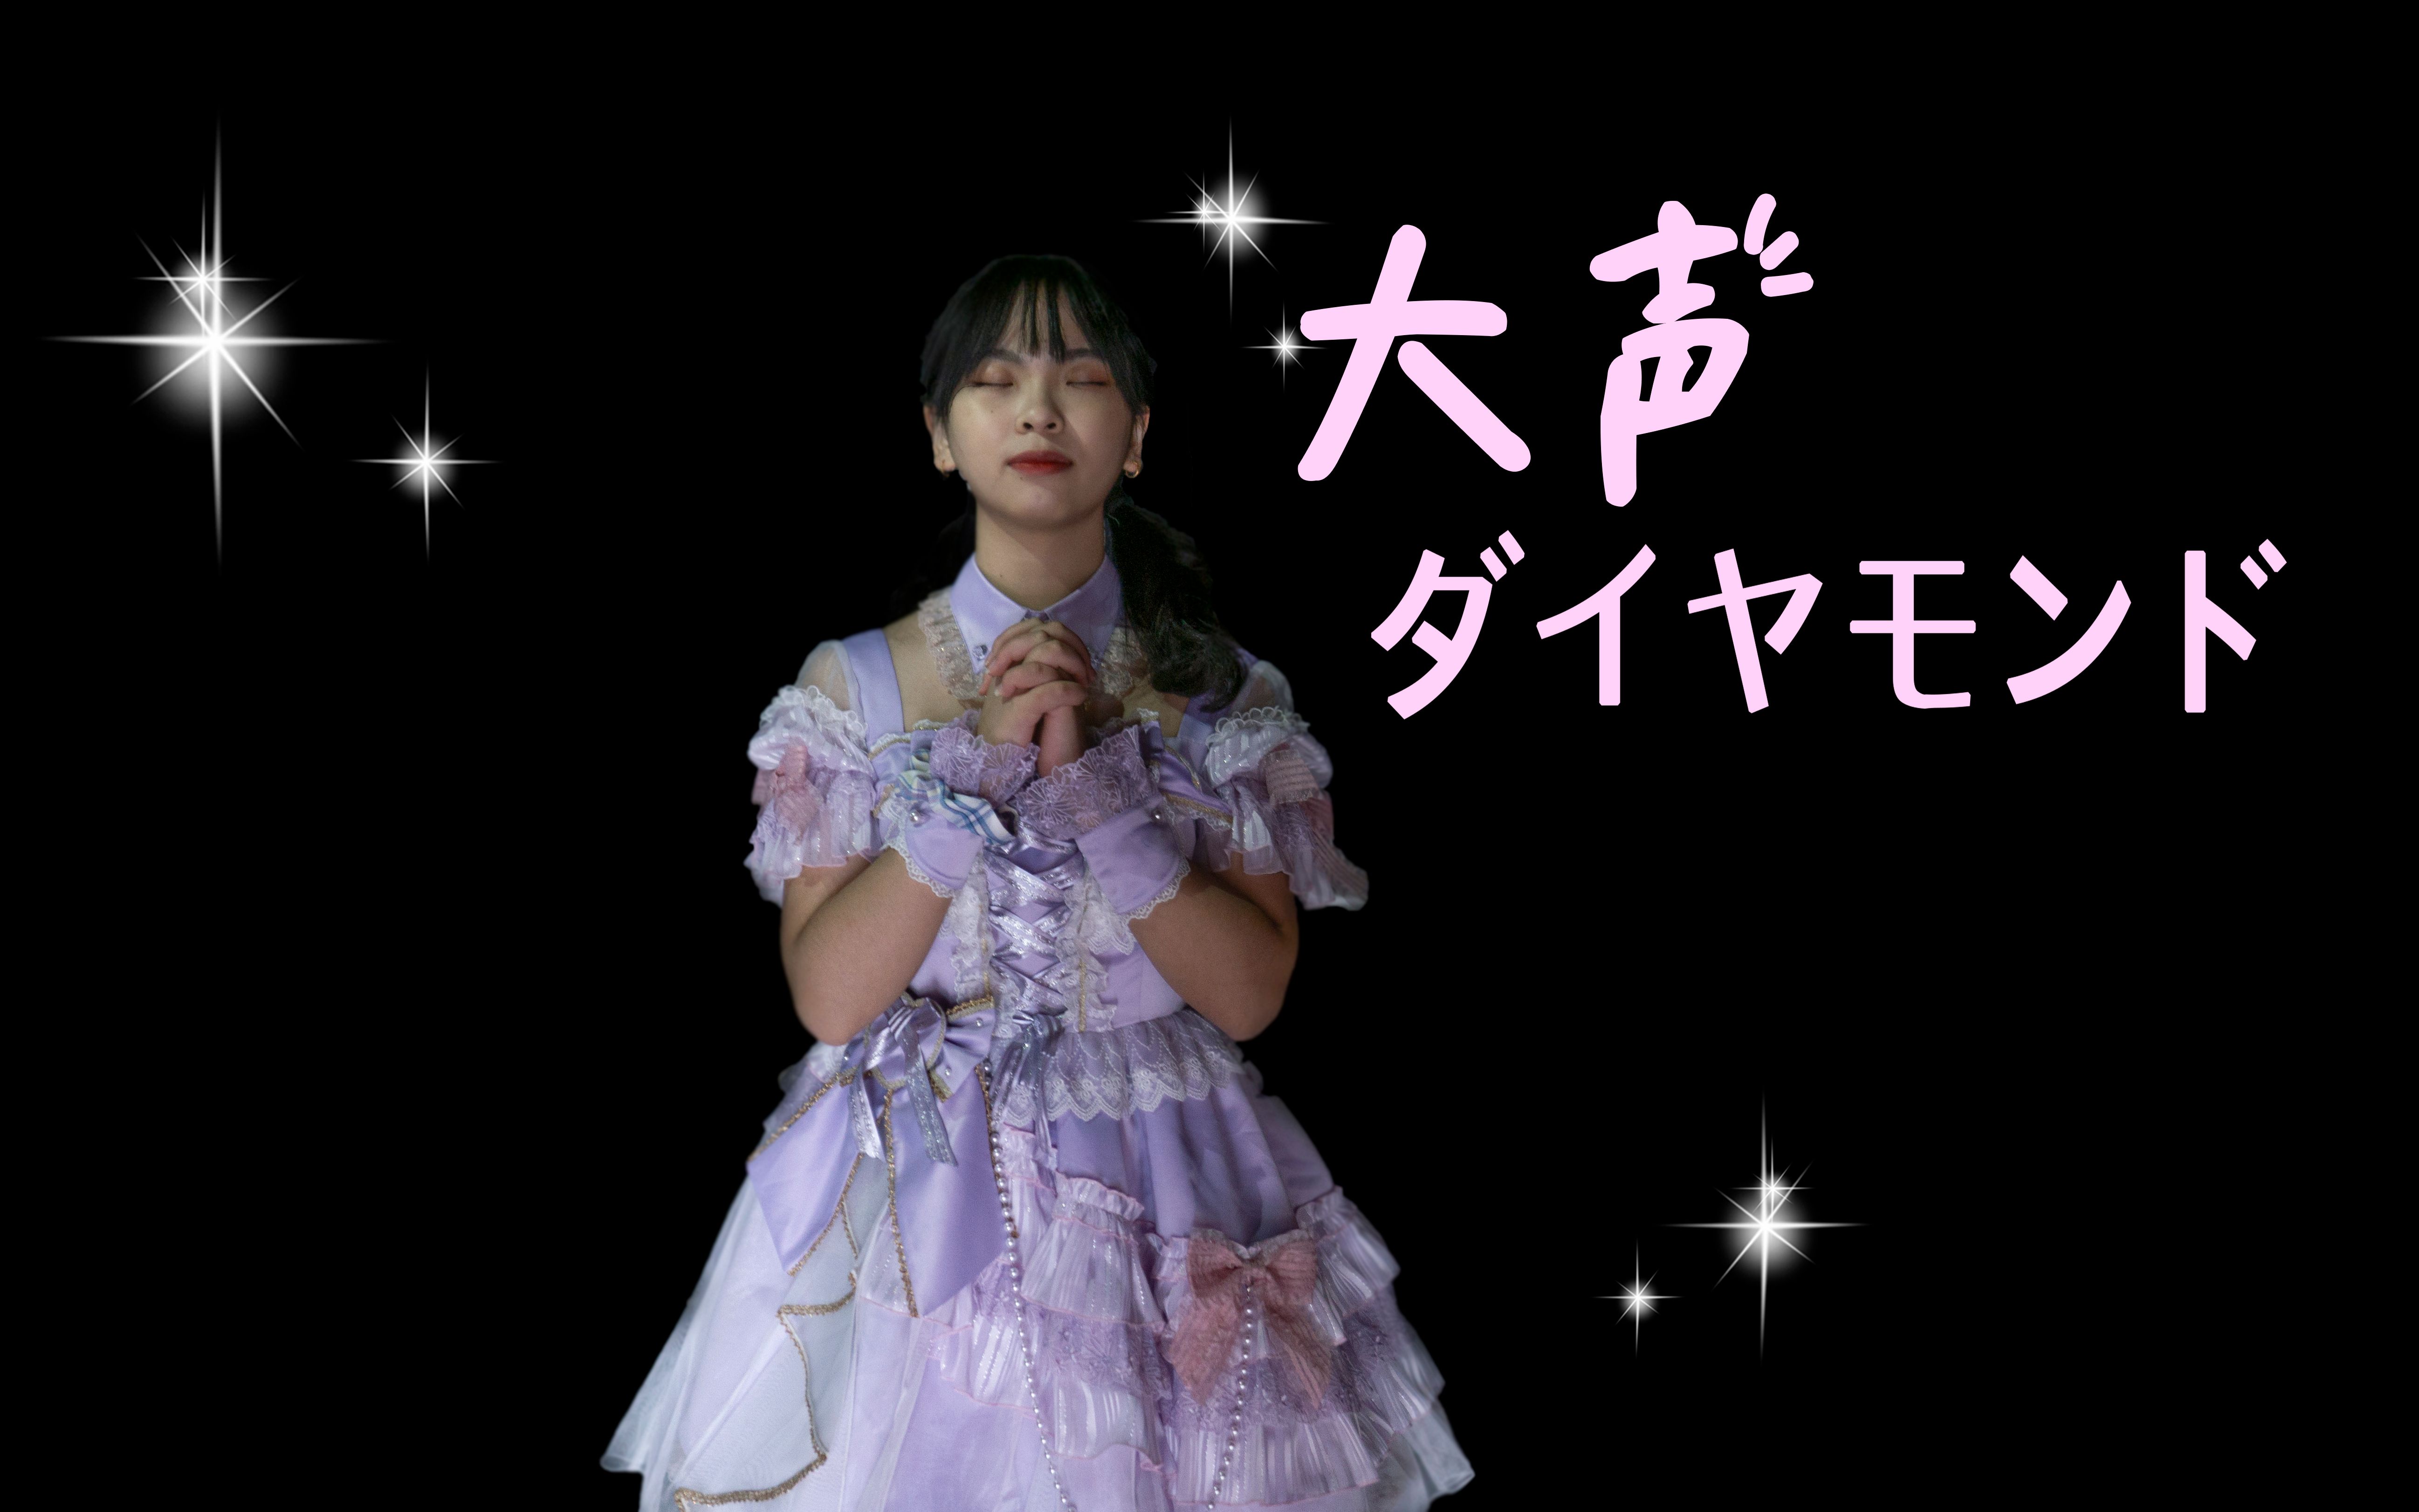 【爱豆】AKB48 - 大声ダイヤモンド（大声钻石/大钻）好喜欢你~ 想要传达给你~~~